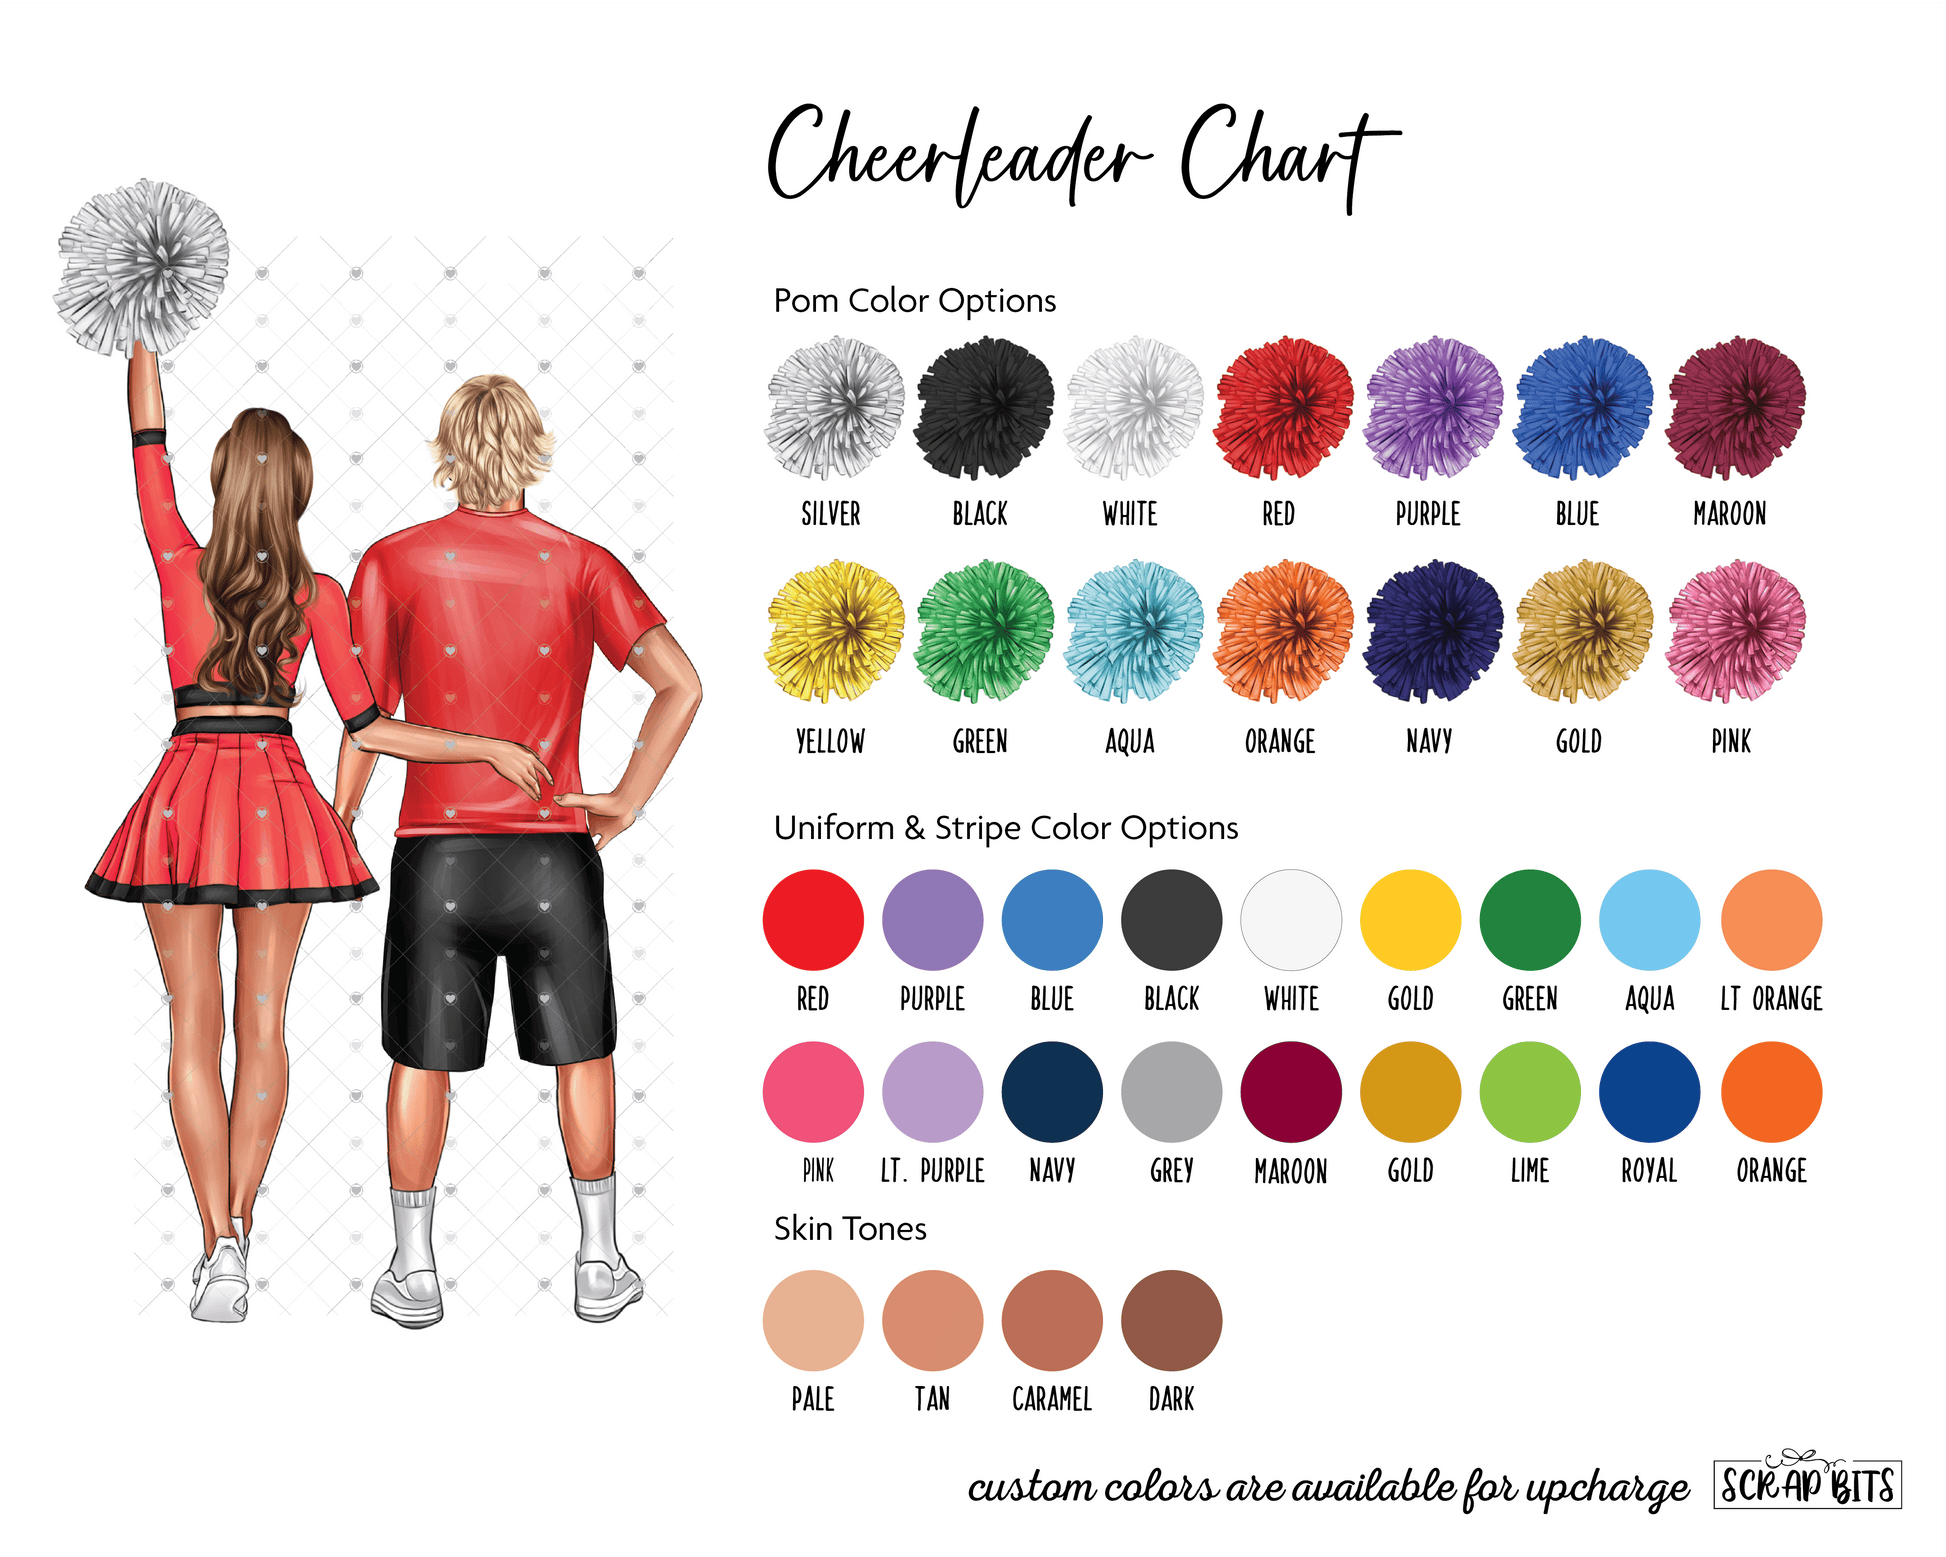 Cheer Besties Print, Custom Cheerleading Team Gift . Personalized Digital Portrait Print - Scrap Bits